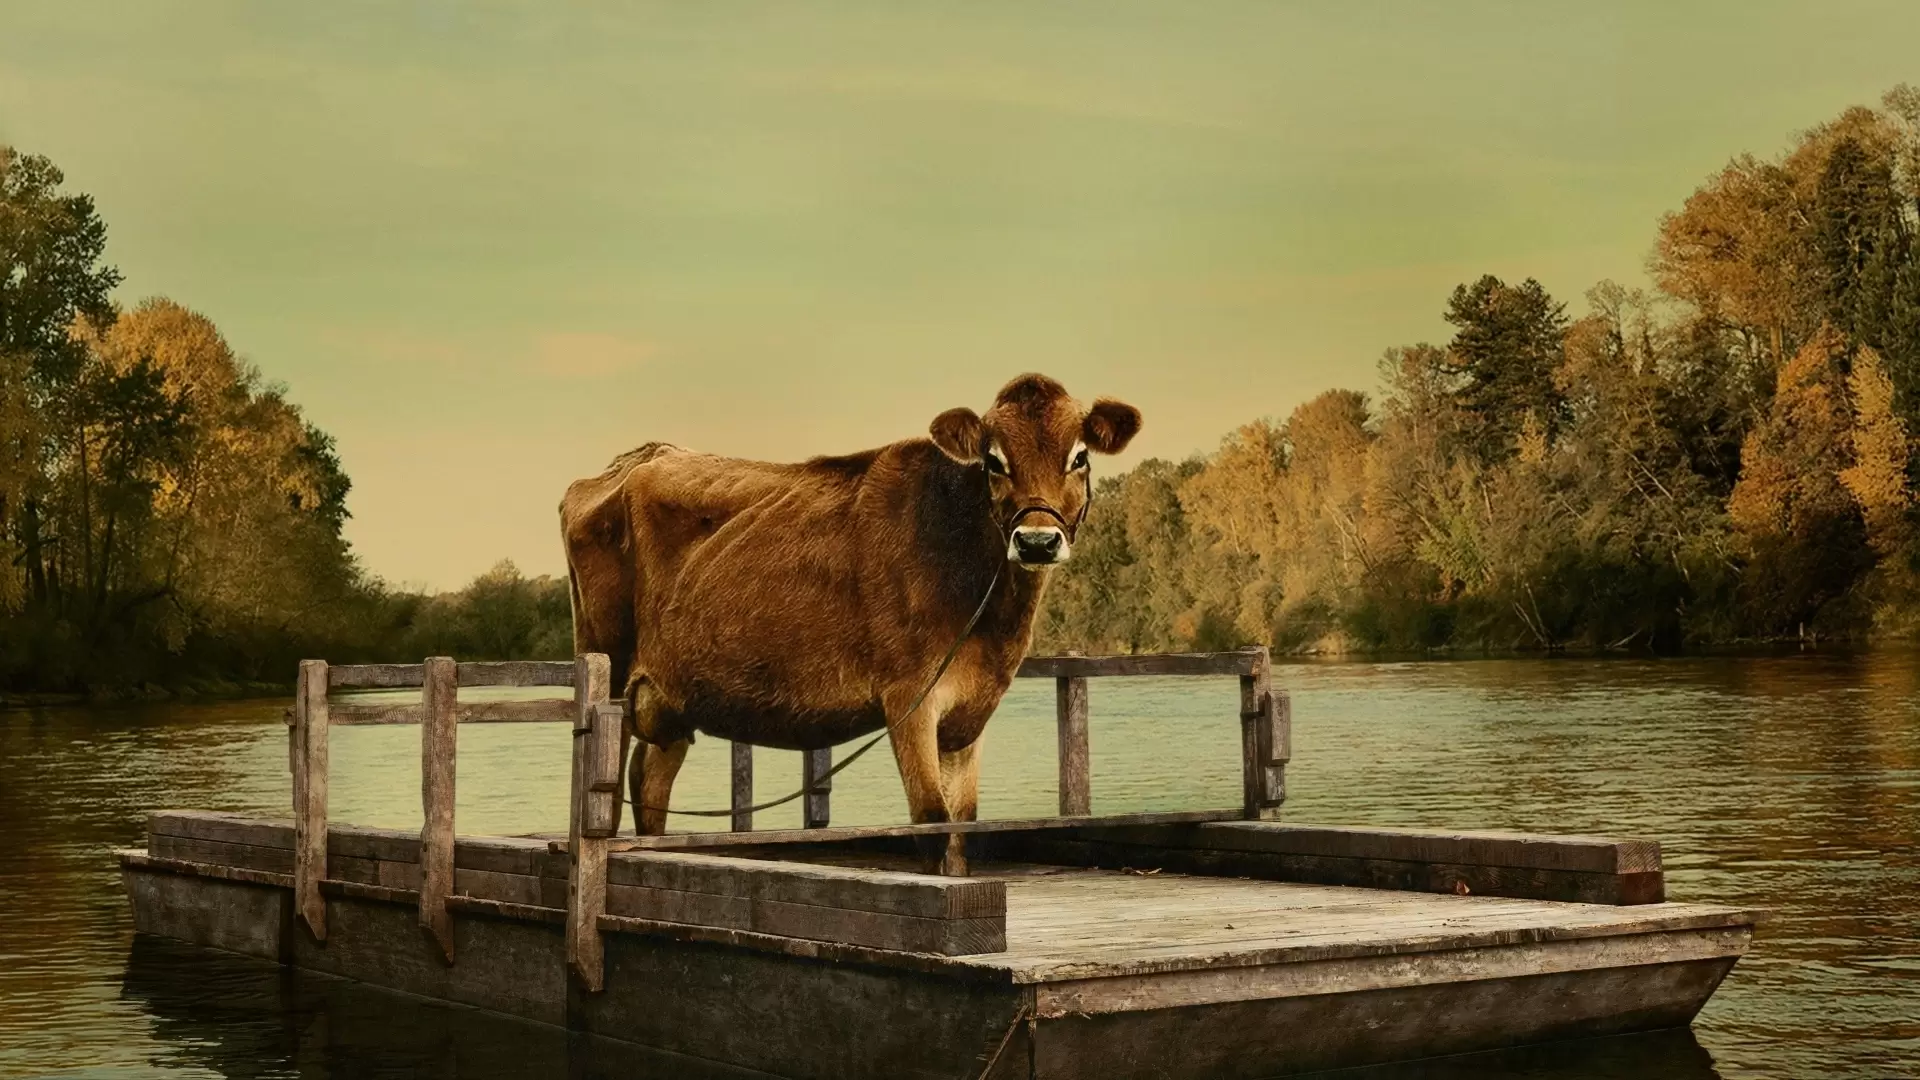 دانلود فیلم First Cow 2019 (گاو اول) با زیرنویس فارسی و تماشای آنلاین